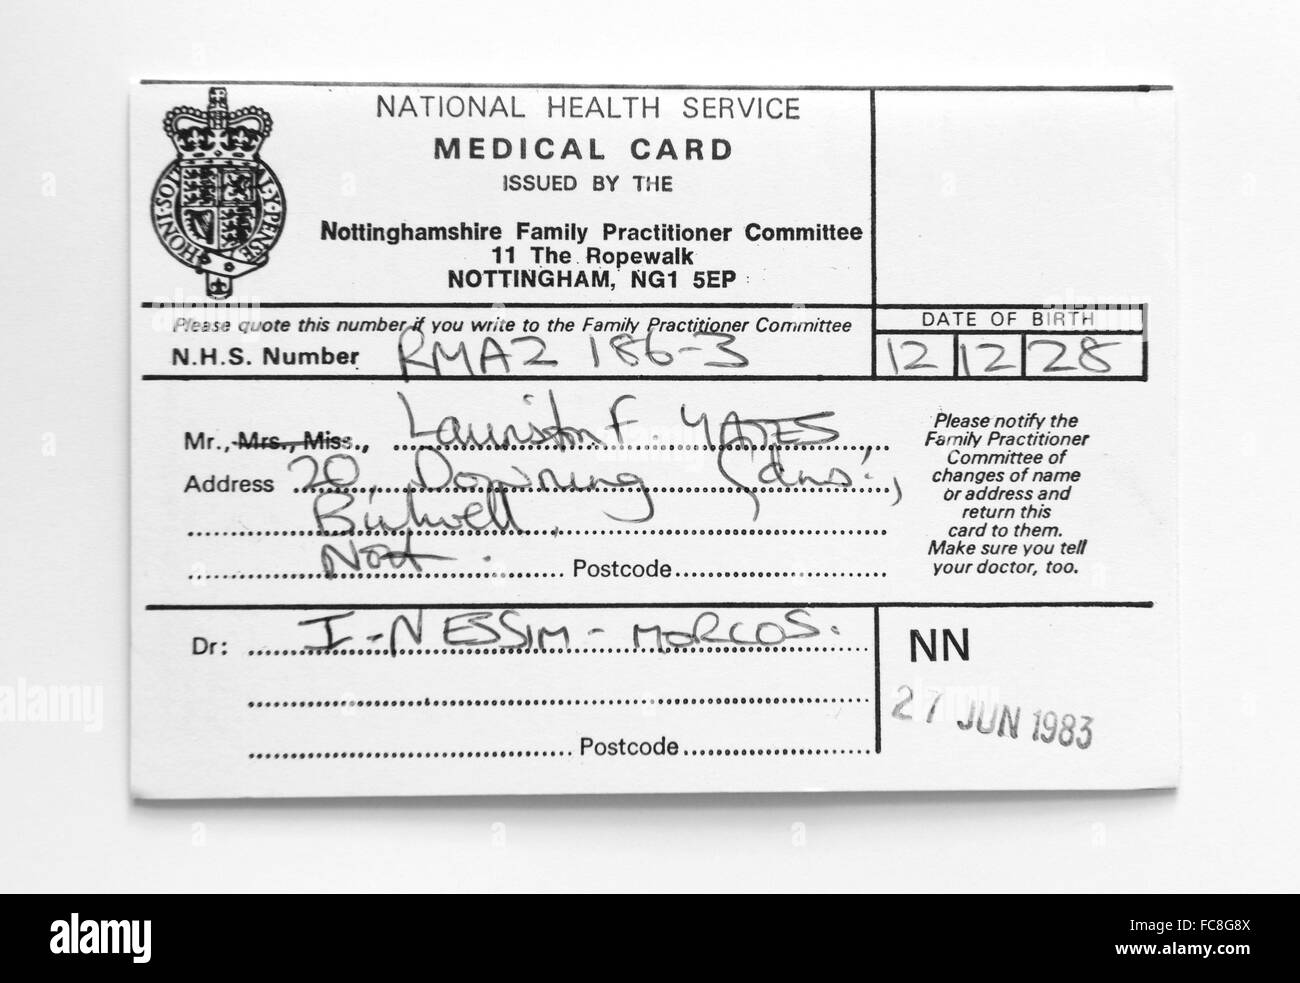 Tarjeta sanitaria del Servicio Nacional de Salud, de fecha 27 de junio de 1983 Foto de stock